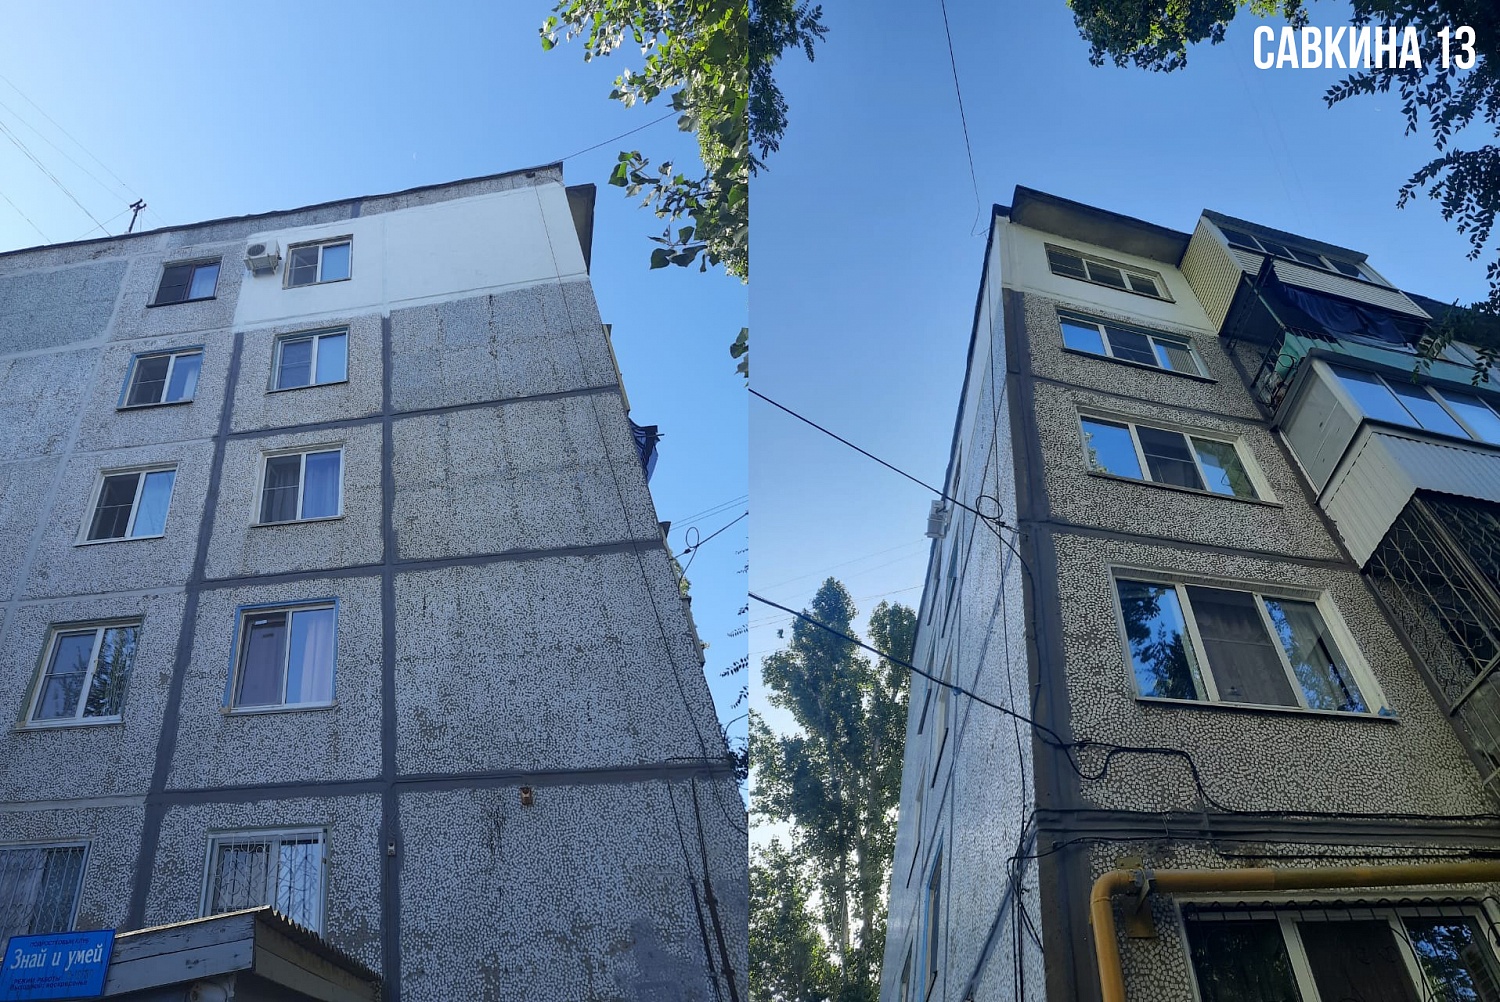 Броня Фасад на жилых домах ул. Дубовская 16а, ул. Савкина 13, г.Волгоград